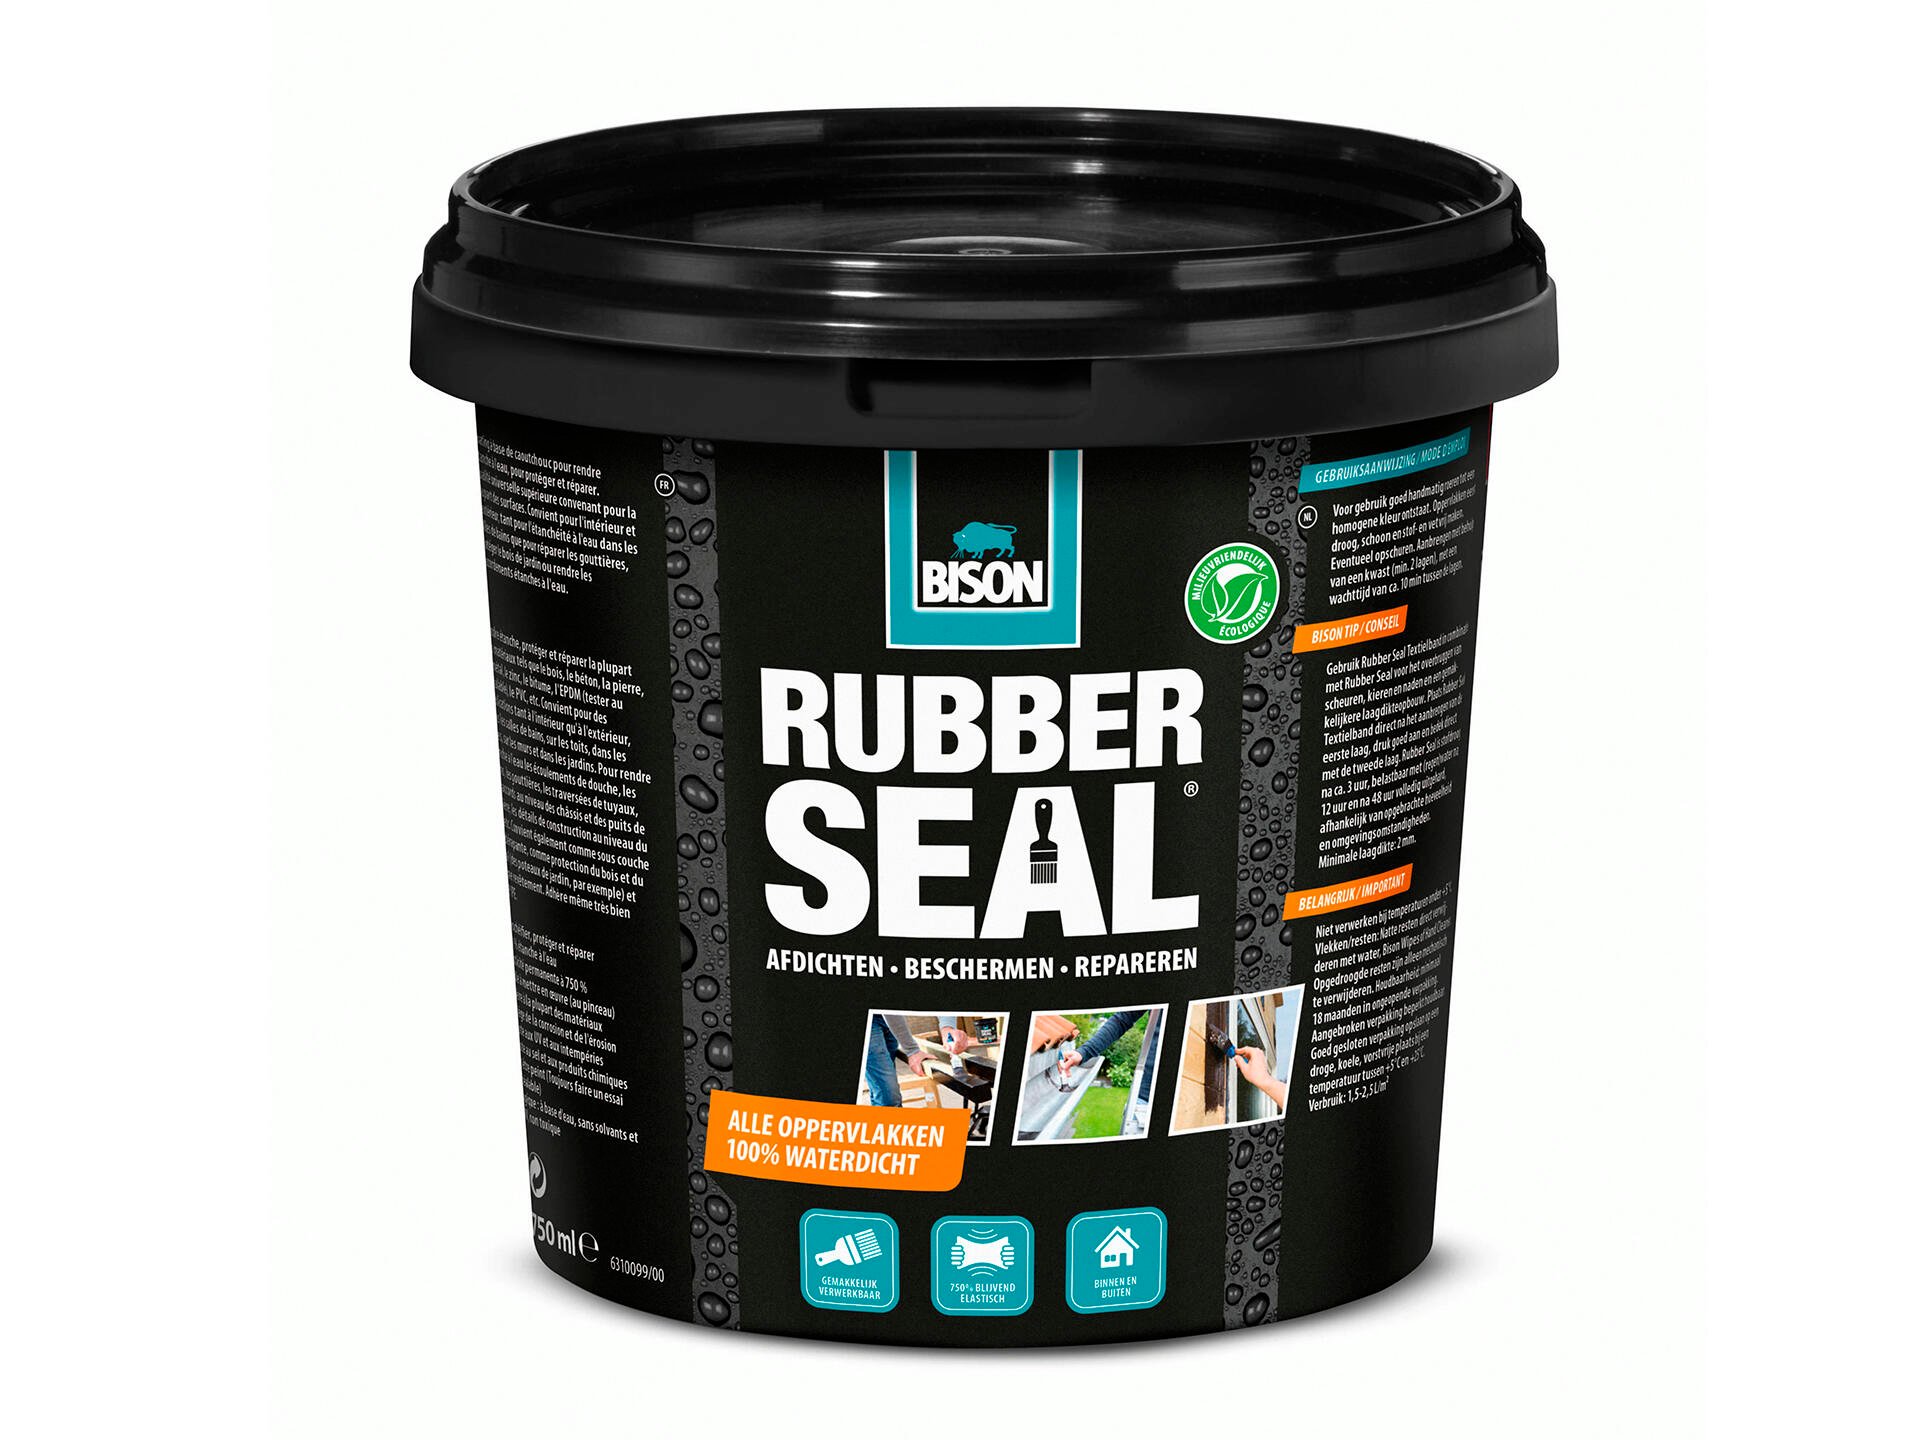 diefstal Verbazing verklaren Bison Rubber Seal coating 750ml | Hubo